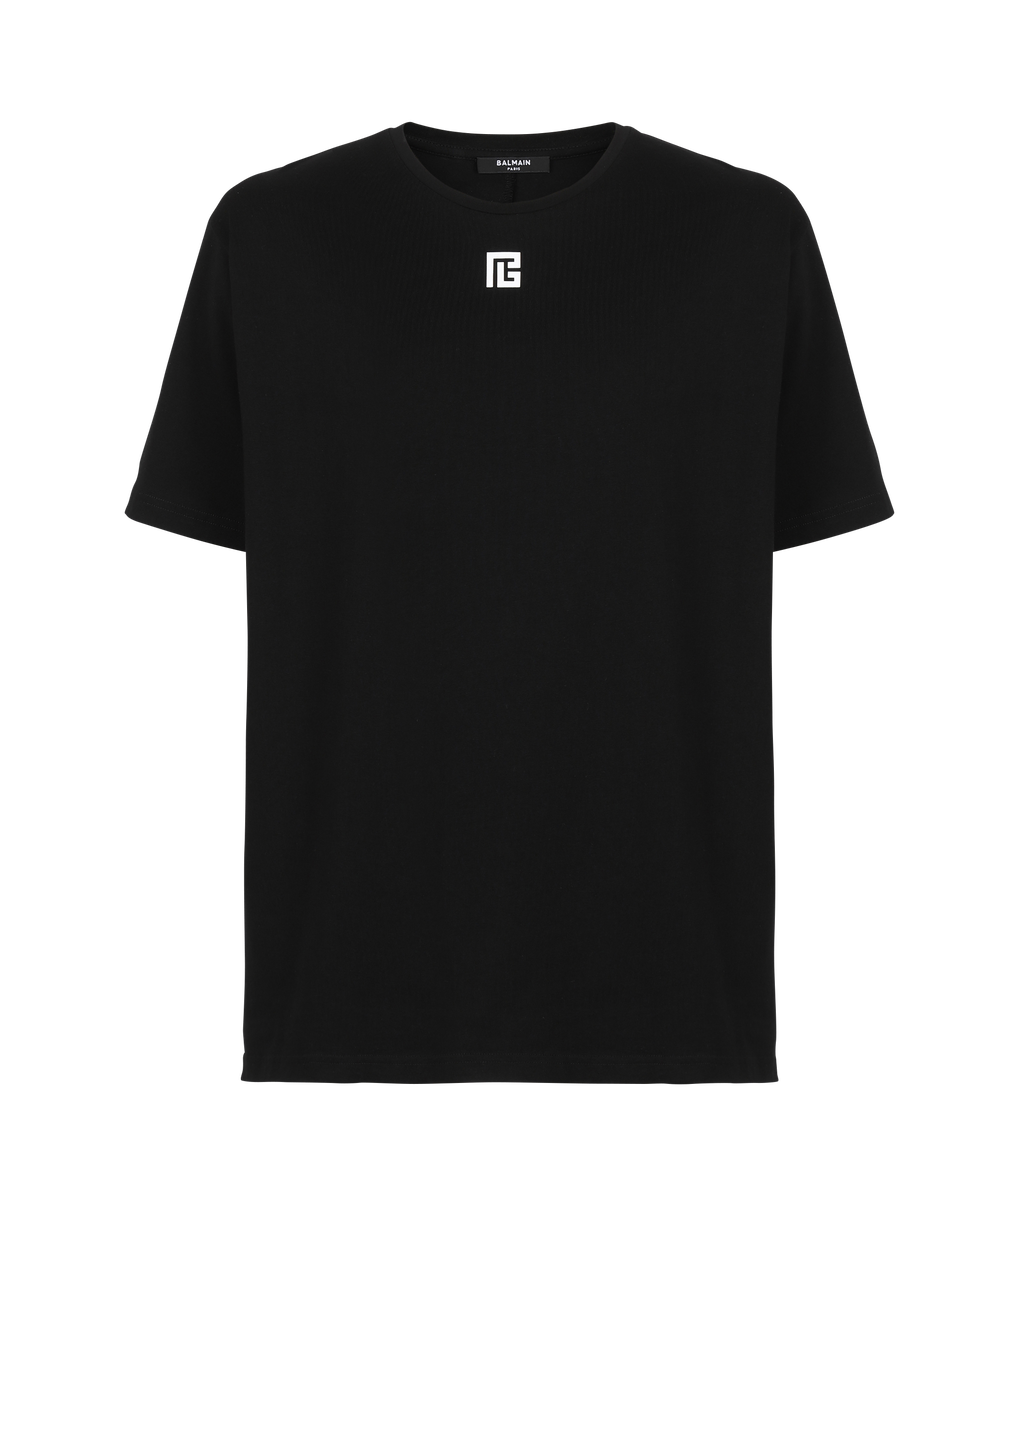 T-shirt oversize en coton imprimé maxi logo Balmain, noir, hi-res